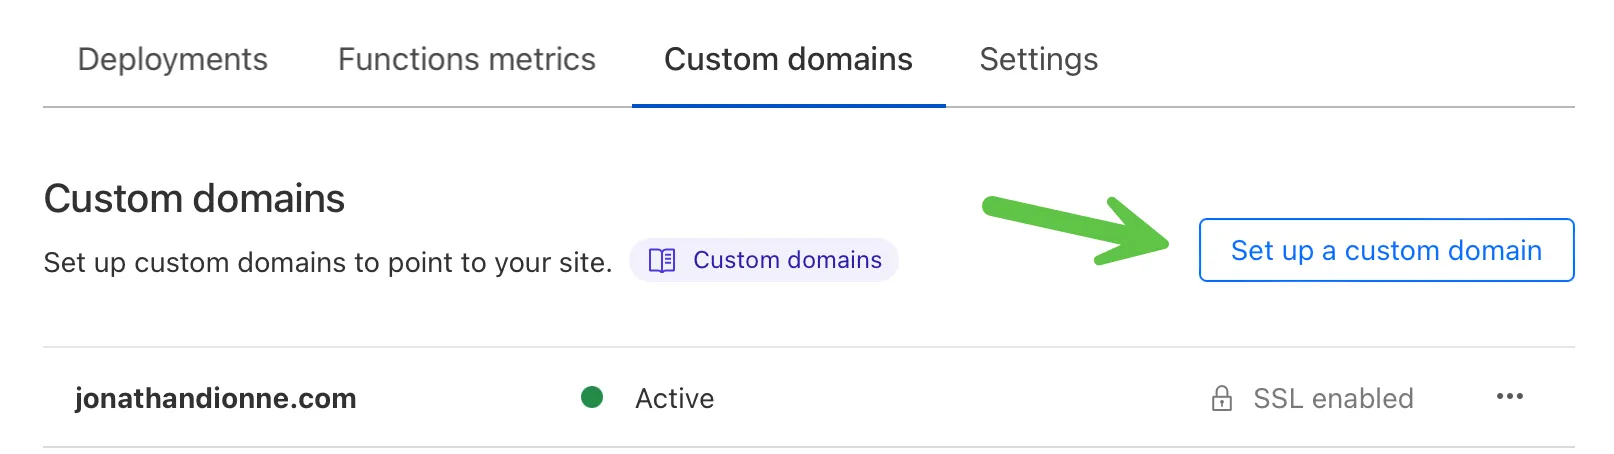 Custom domain - Cloudflare Dashboard